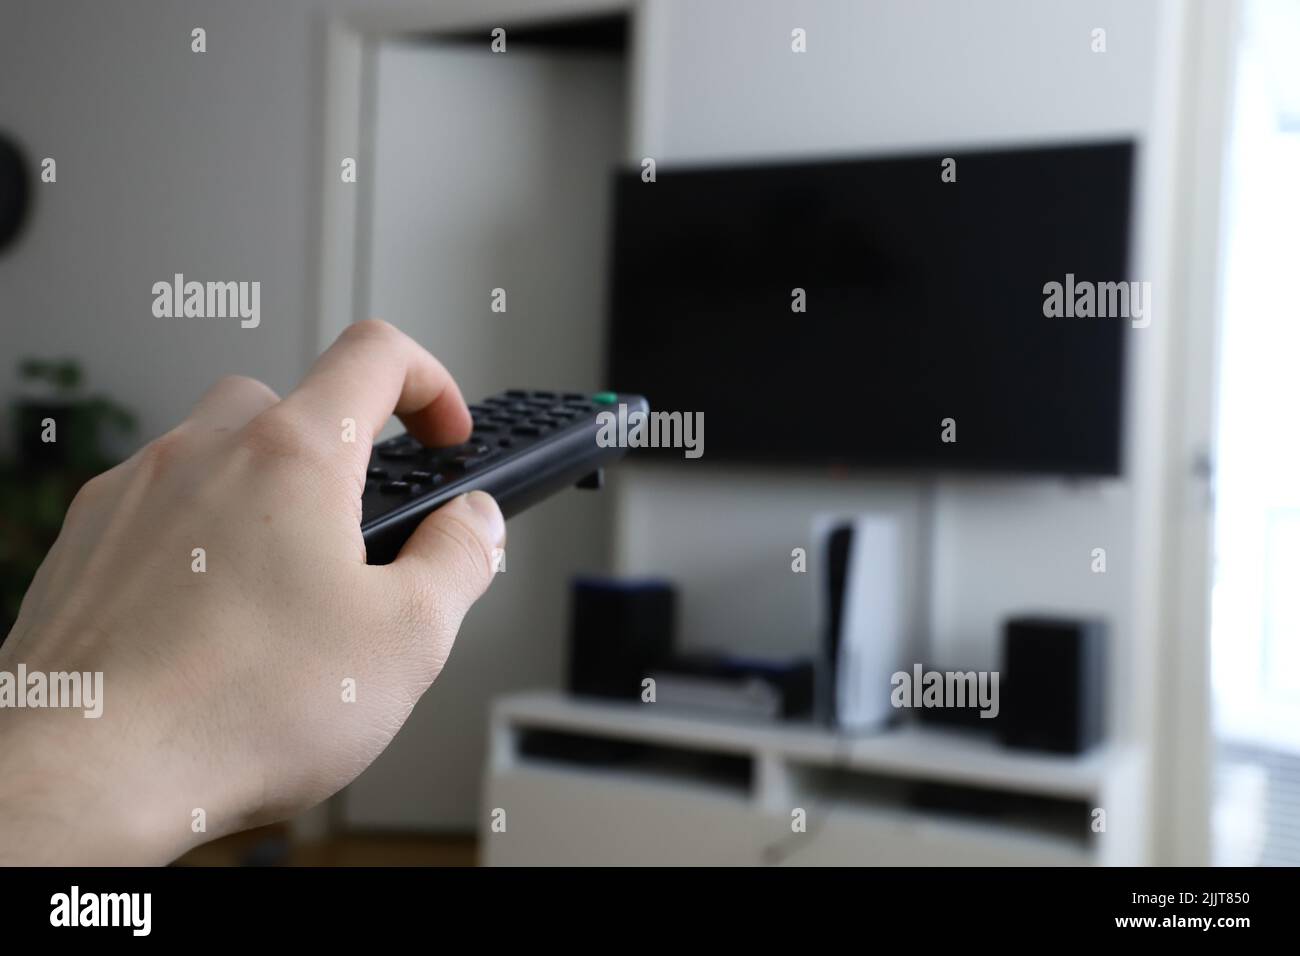 Die Hand eines Mannes, der eine Fernbedienung hält, zeigt auf den Fernseher Stockfoto